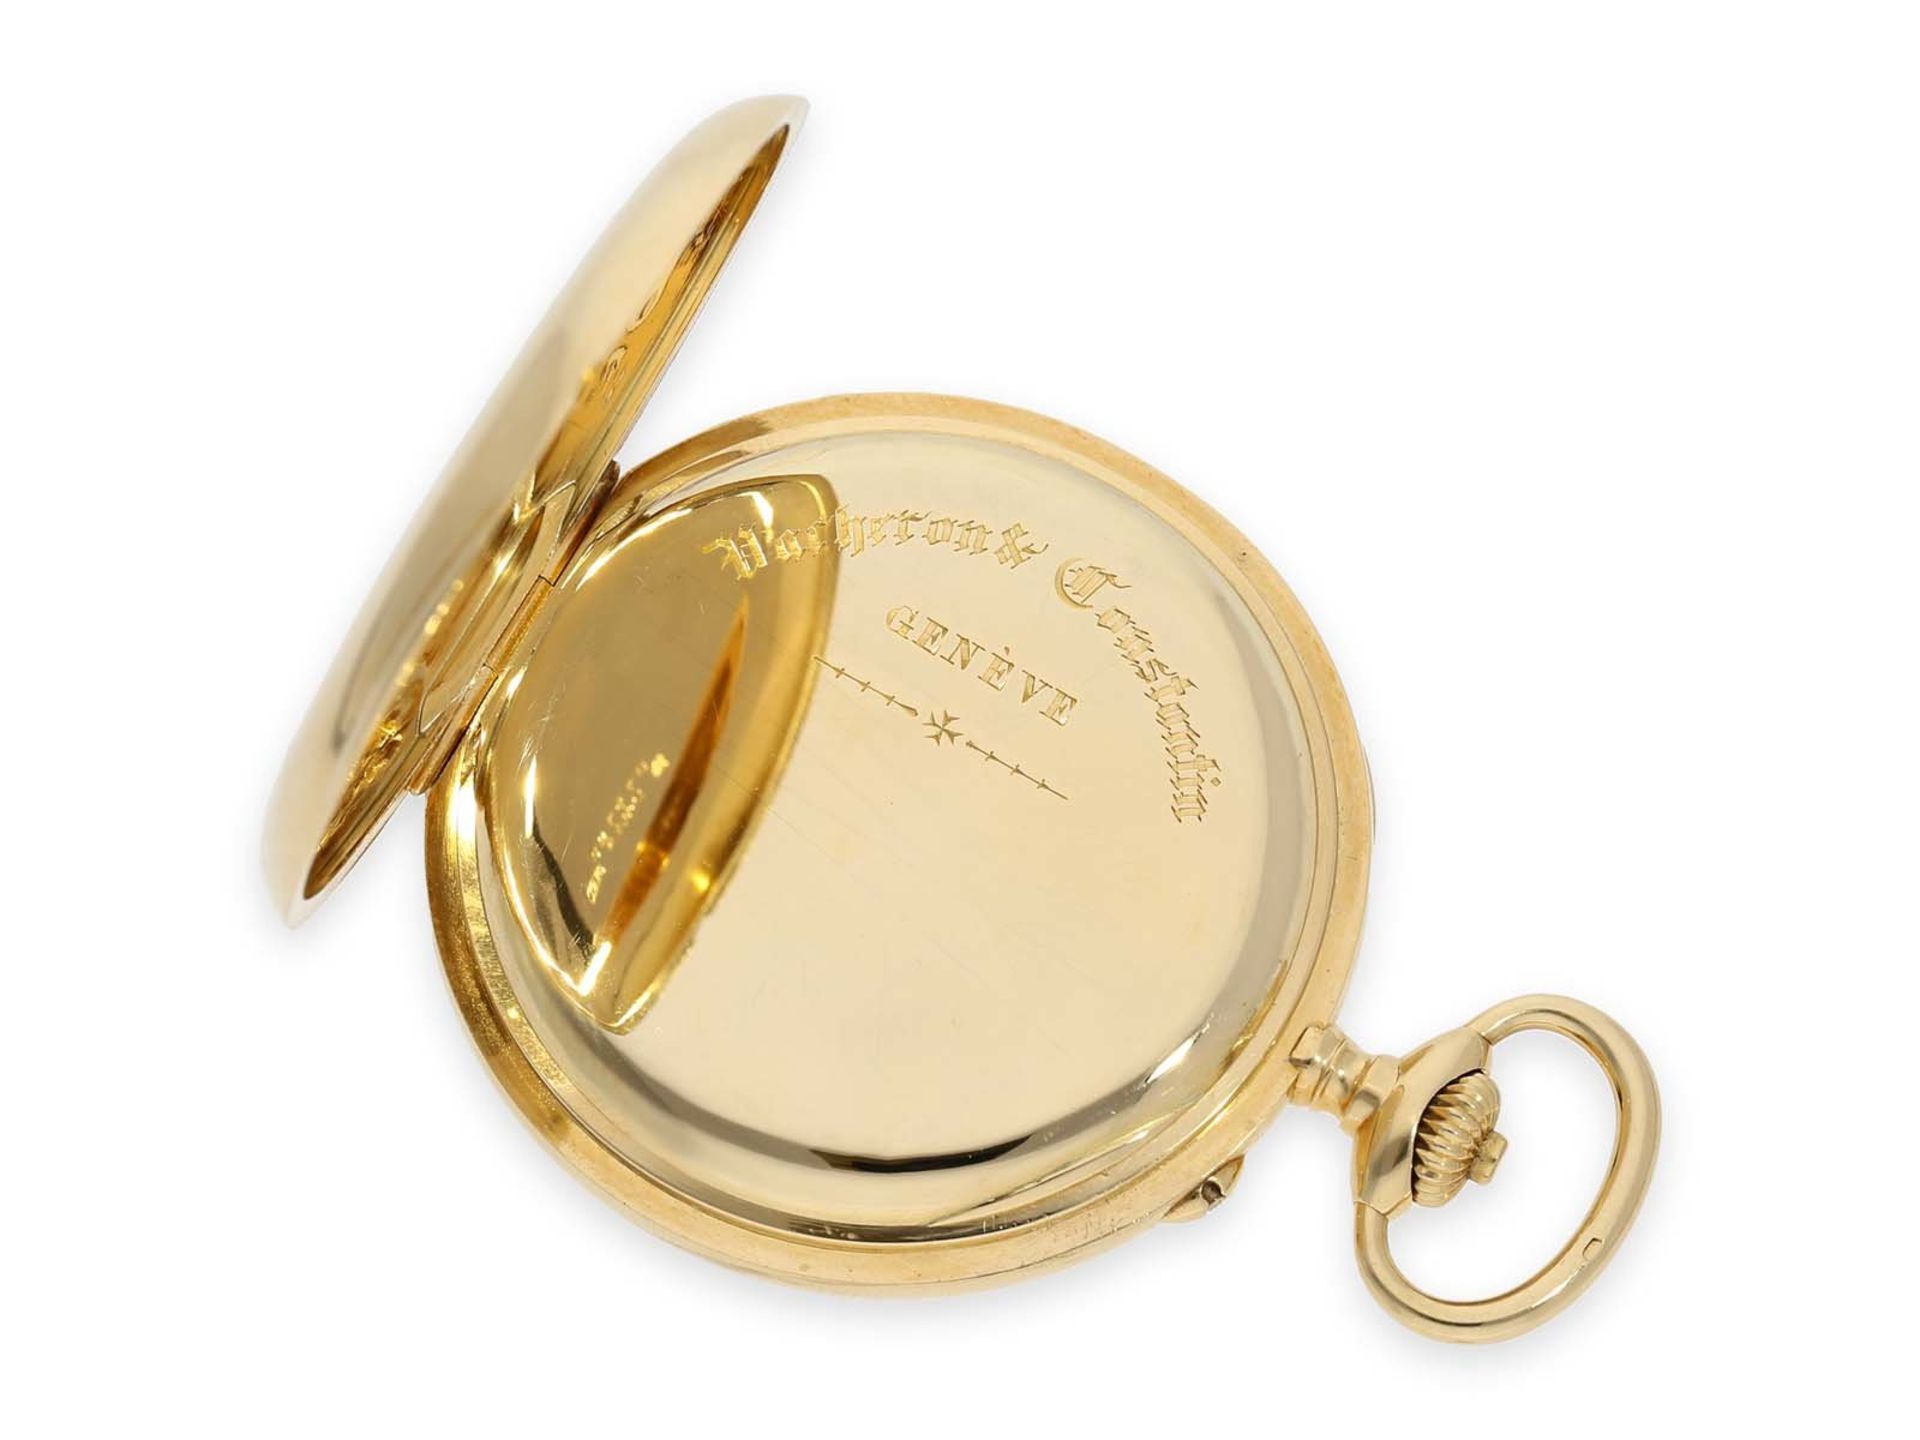 Taschenuhr: exquisites Vacheron & Constantin Ankerchronometer mit Chronograph und Register, nahezu n - Bild 5 aus 11